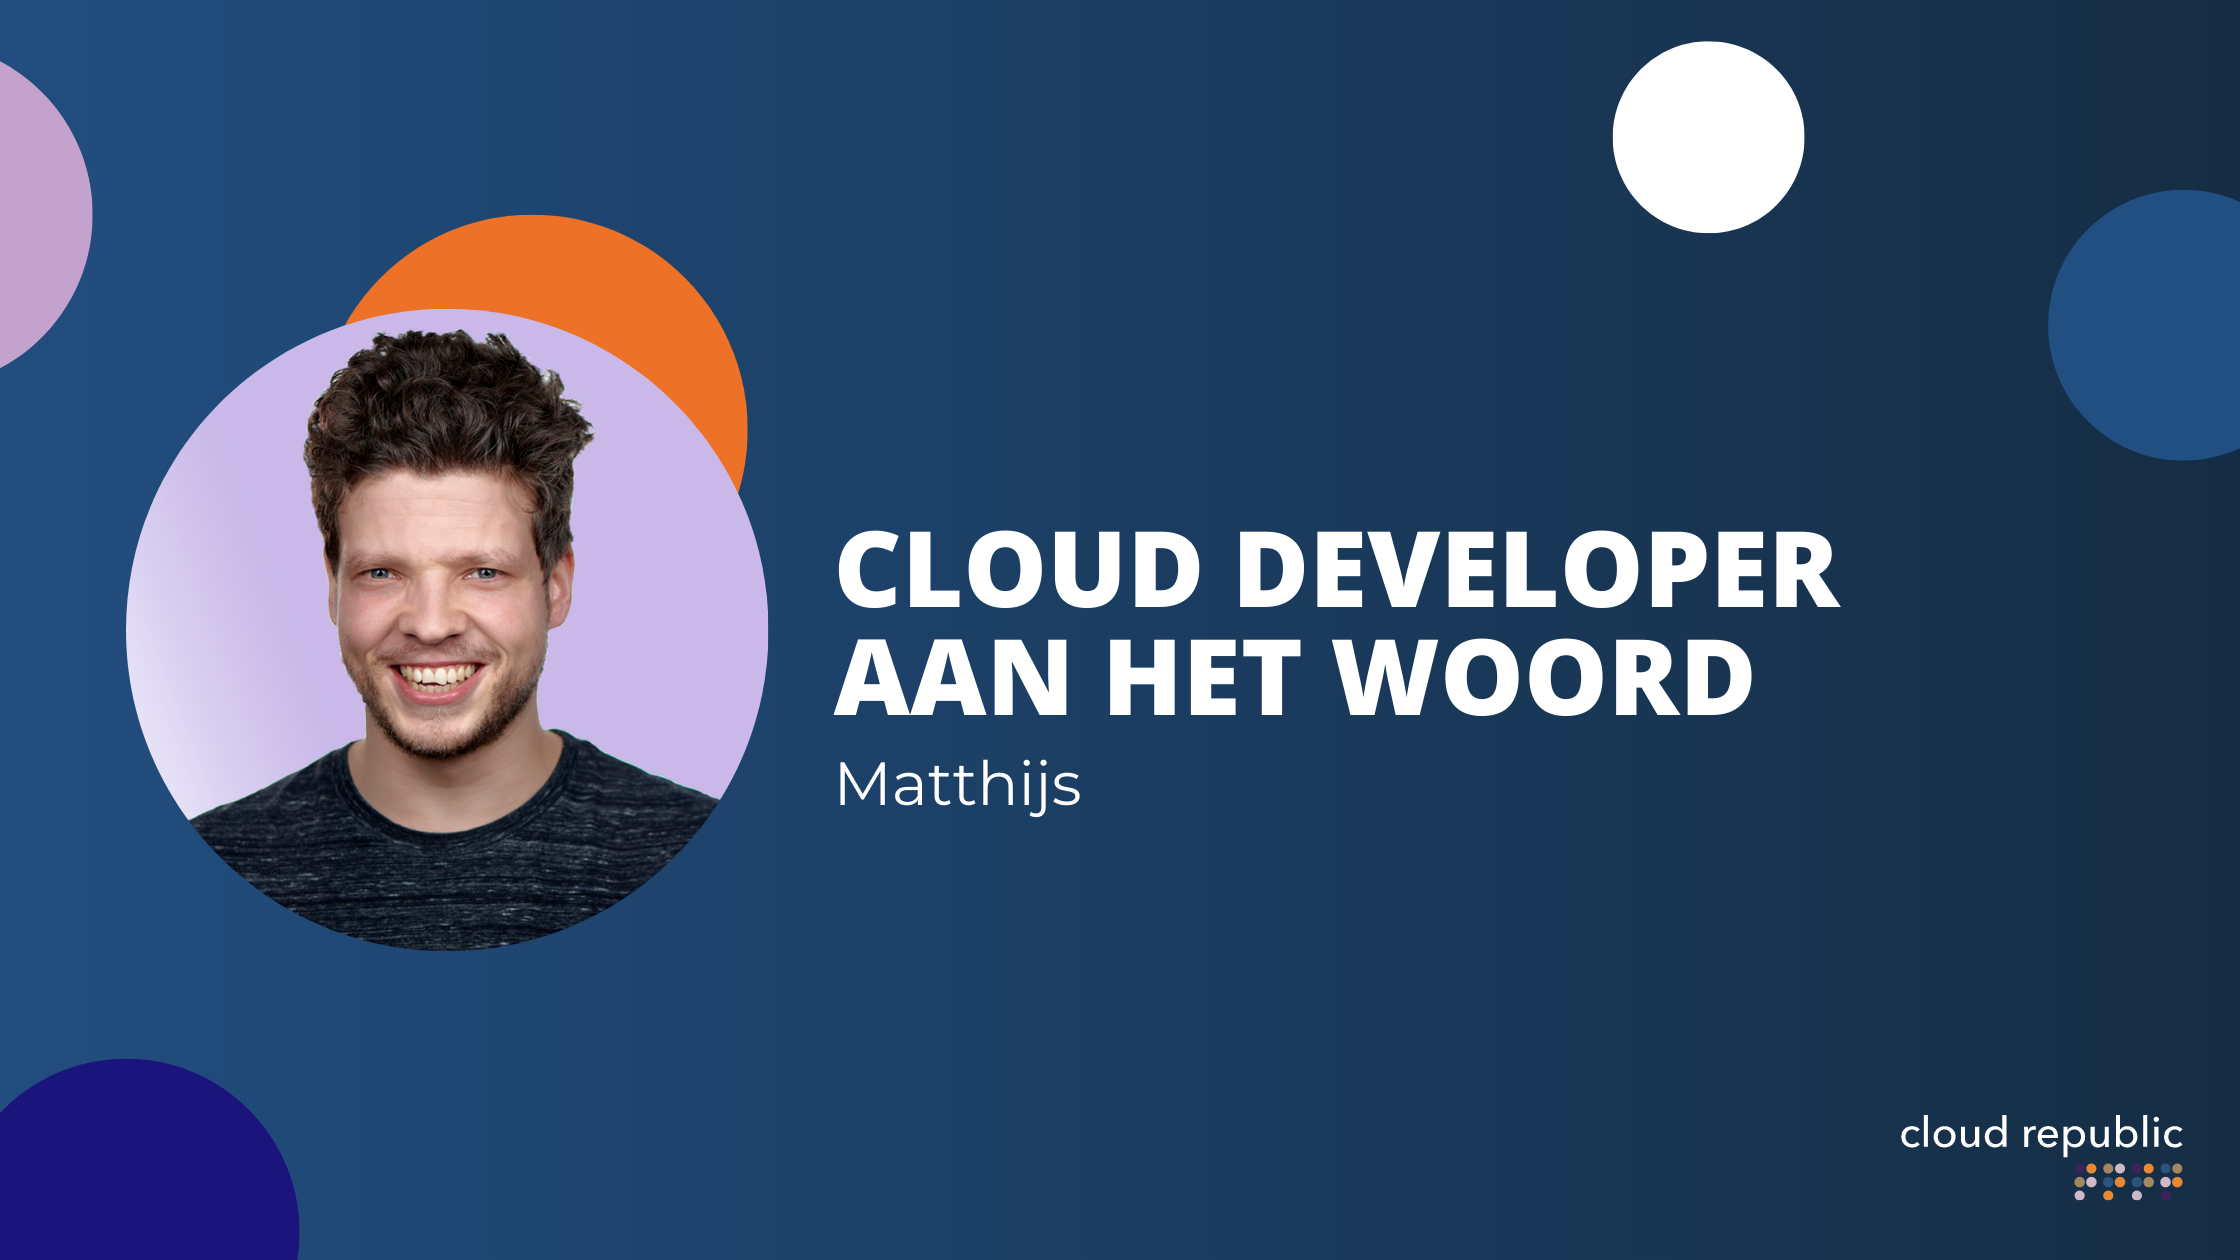 Cloud Developer Matthijs aan het woord